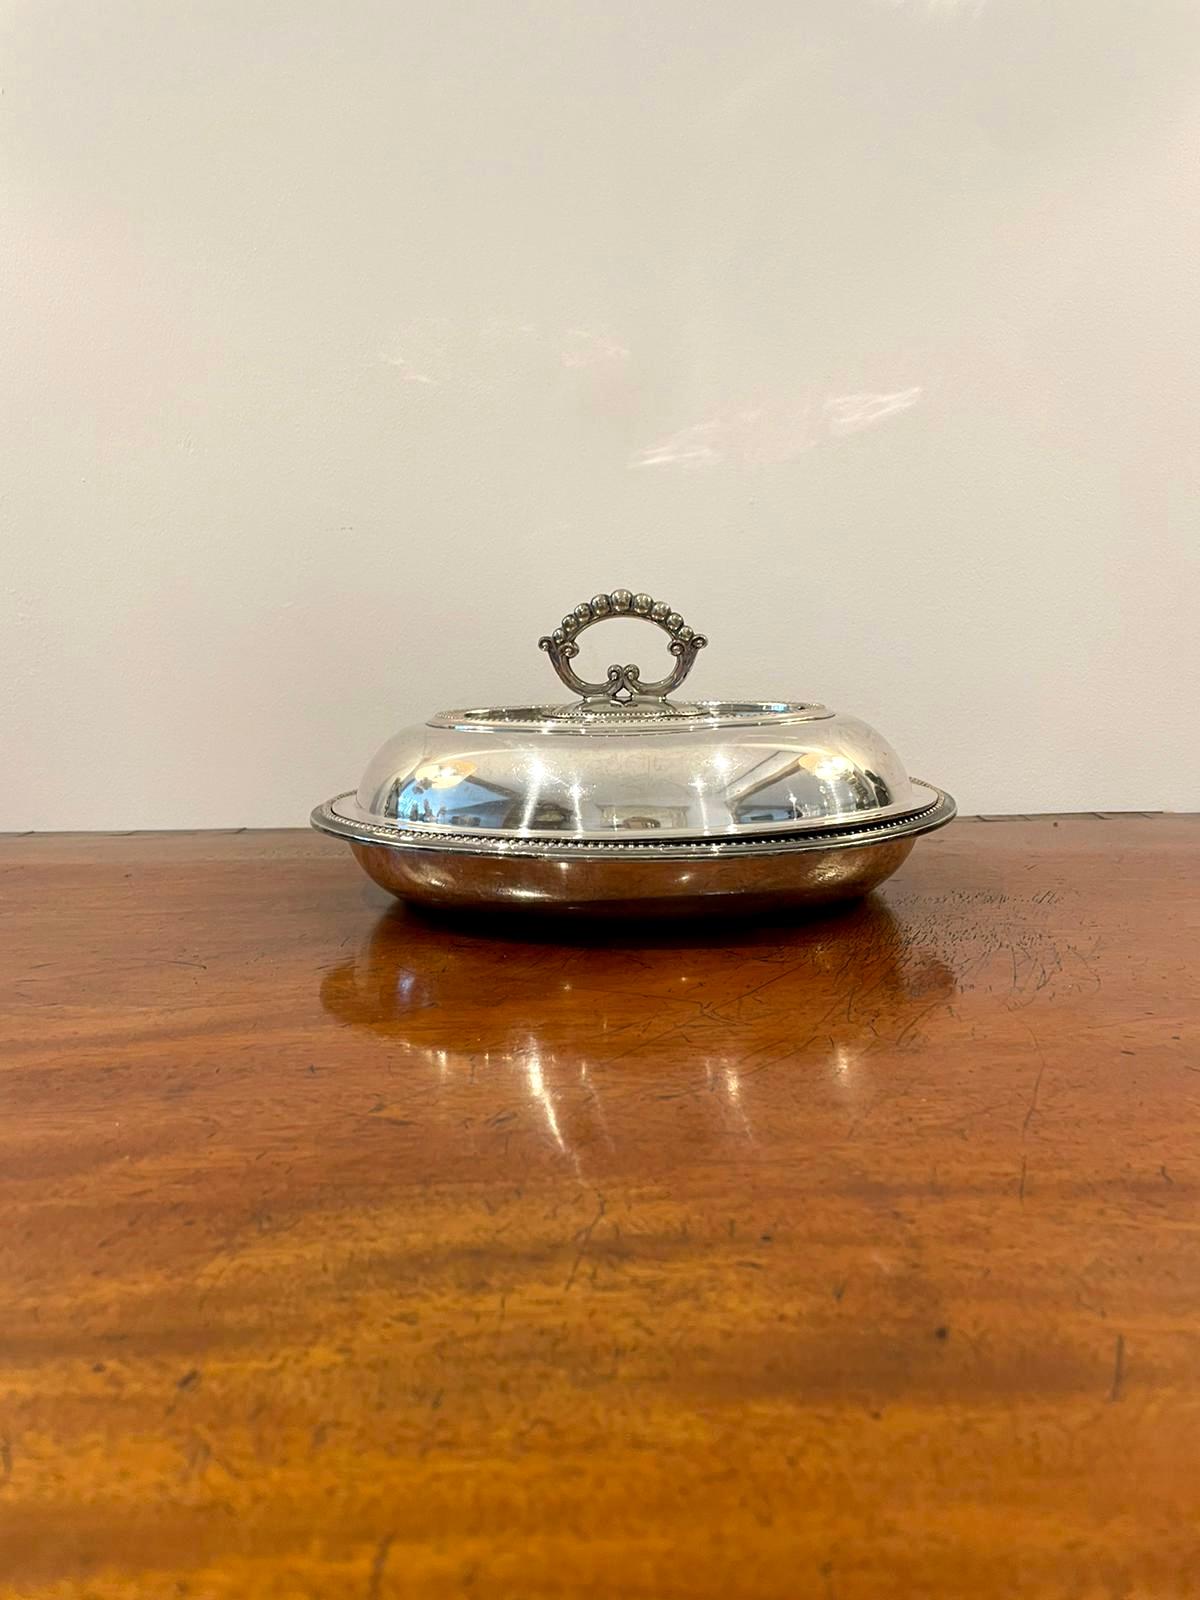 Antique plat d'entrée édouardien en métal argenté avec un couvercle amovible, une poignée d'origine et une jolie bordure ornée 

Mesures : 14 x 28 x 22cm
Date 1900.
    